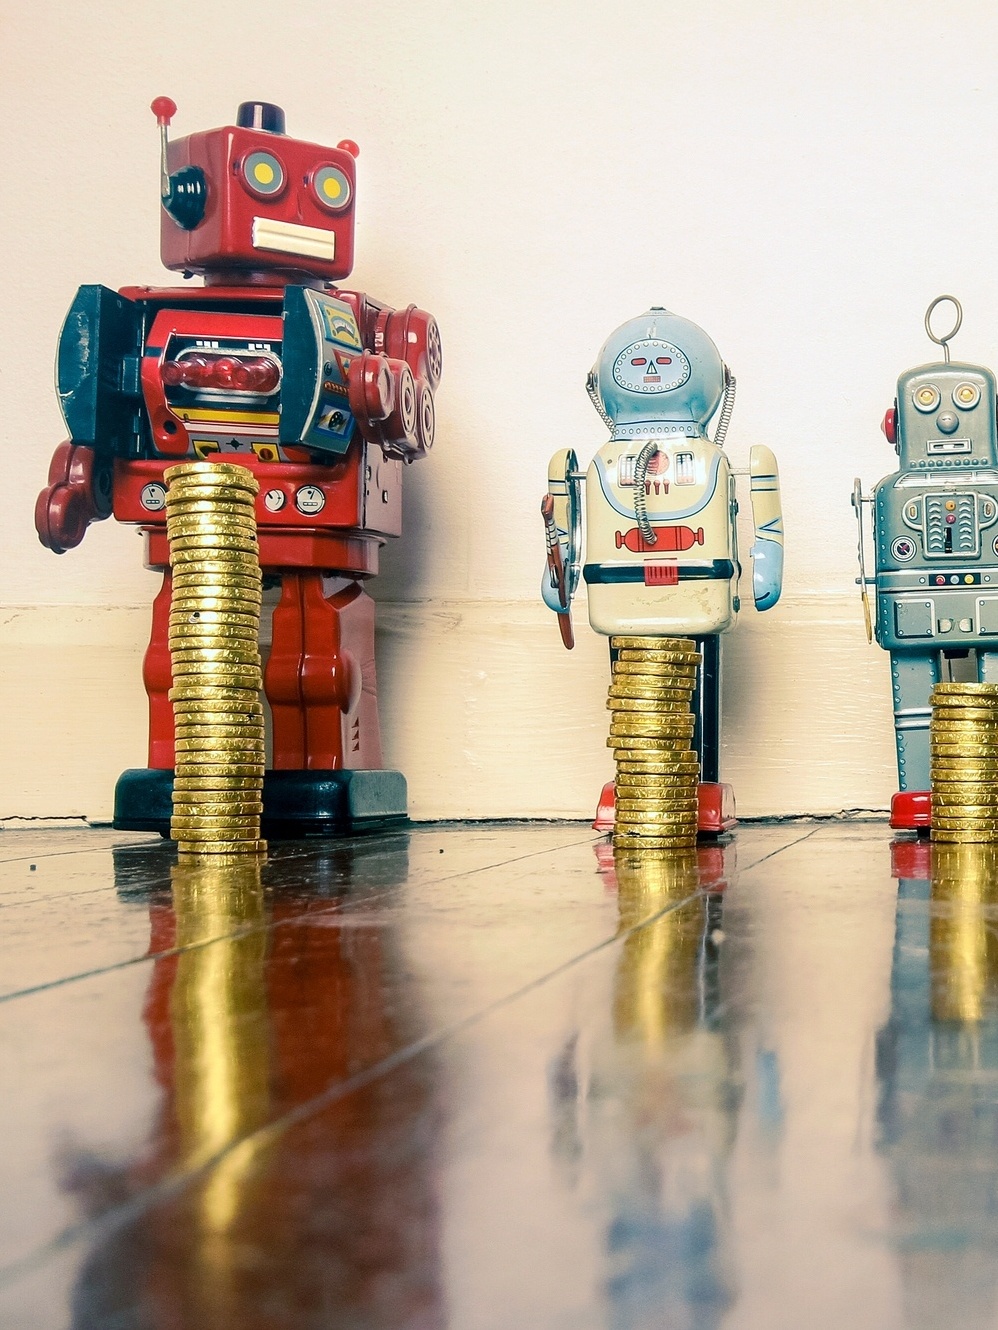 Robôs investidores: Como ganhar bastante dinheiro sem cair em